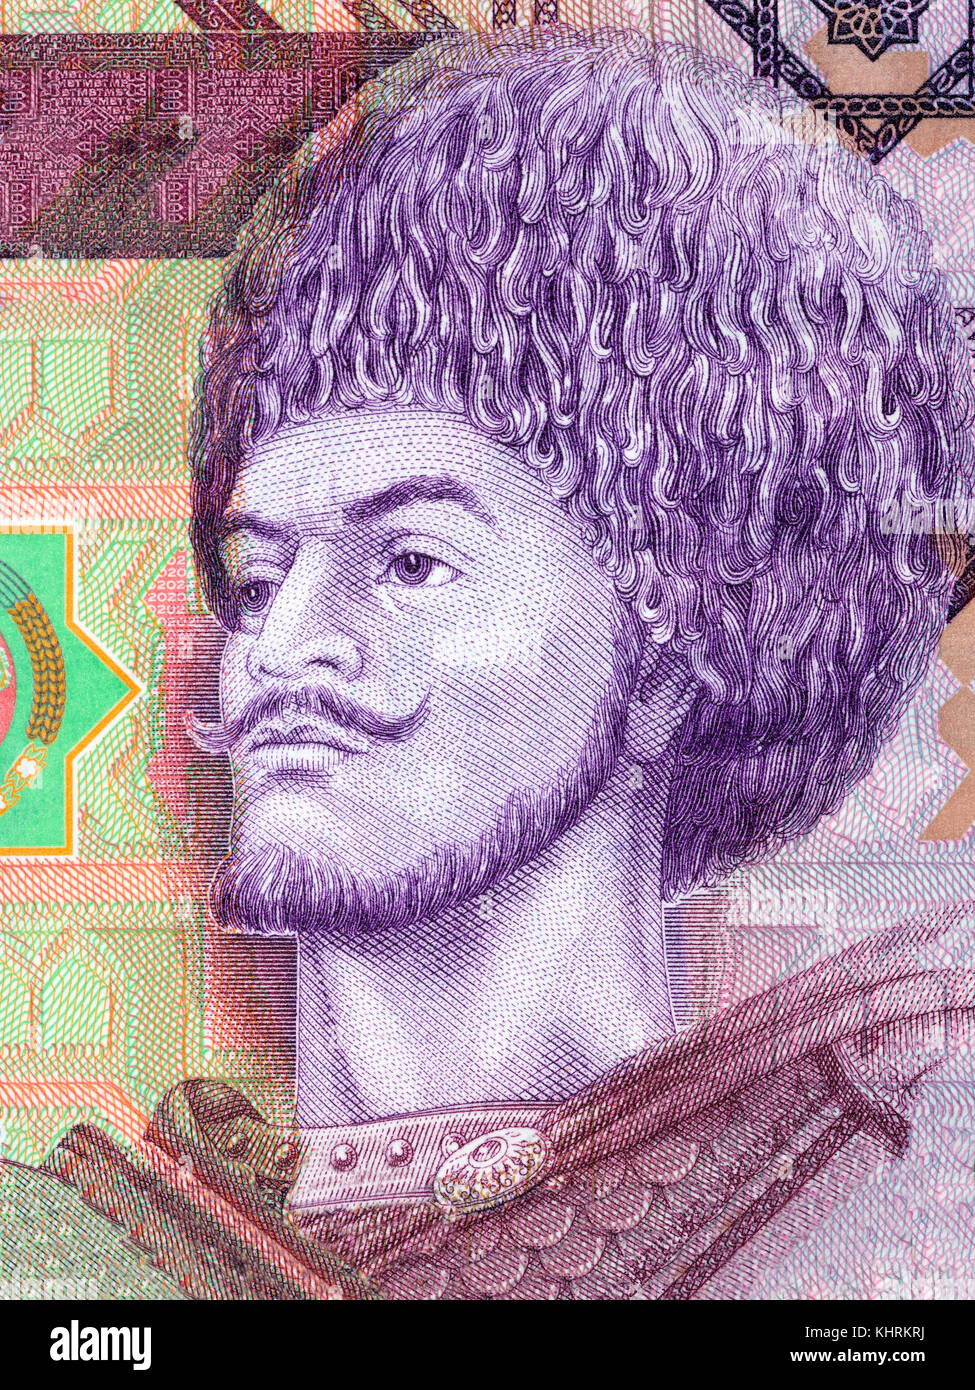 Gorogly Beg Turkmen portrait from Turkmen money Stock Photo